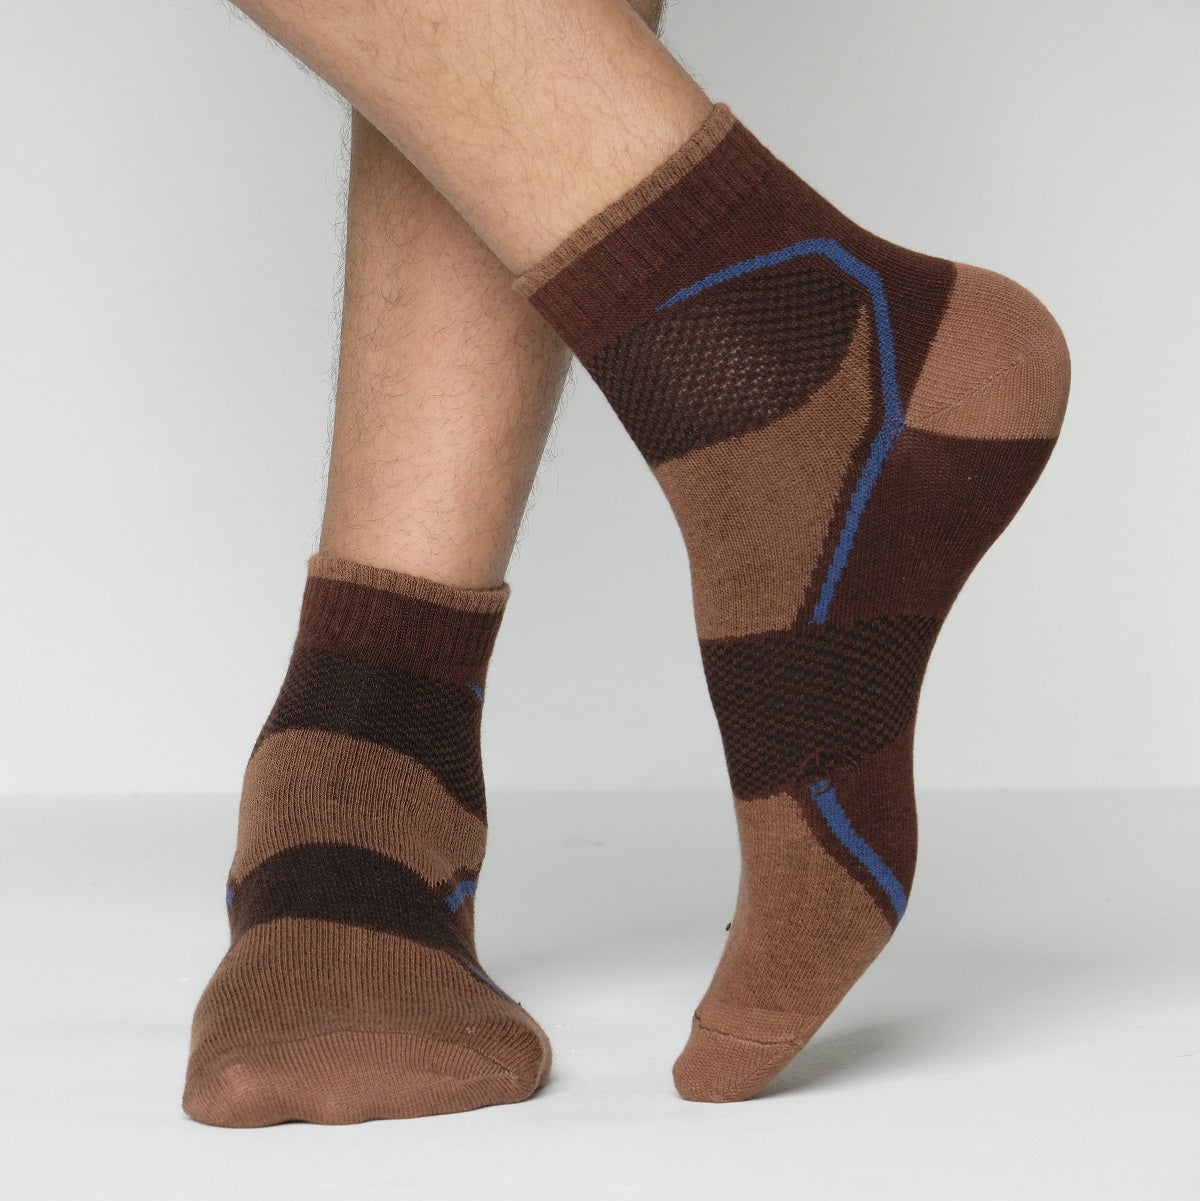 Blank Star Ankle Socks for Men